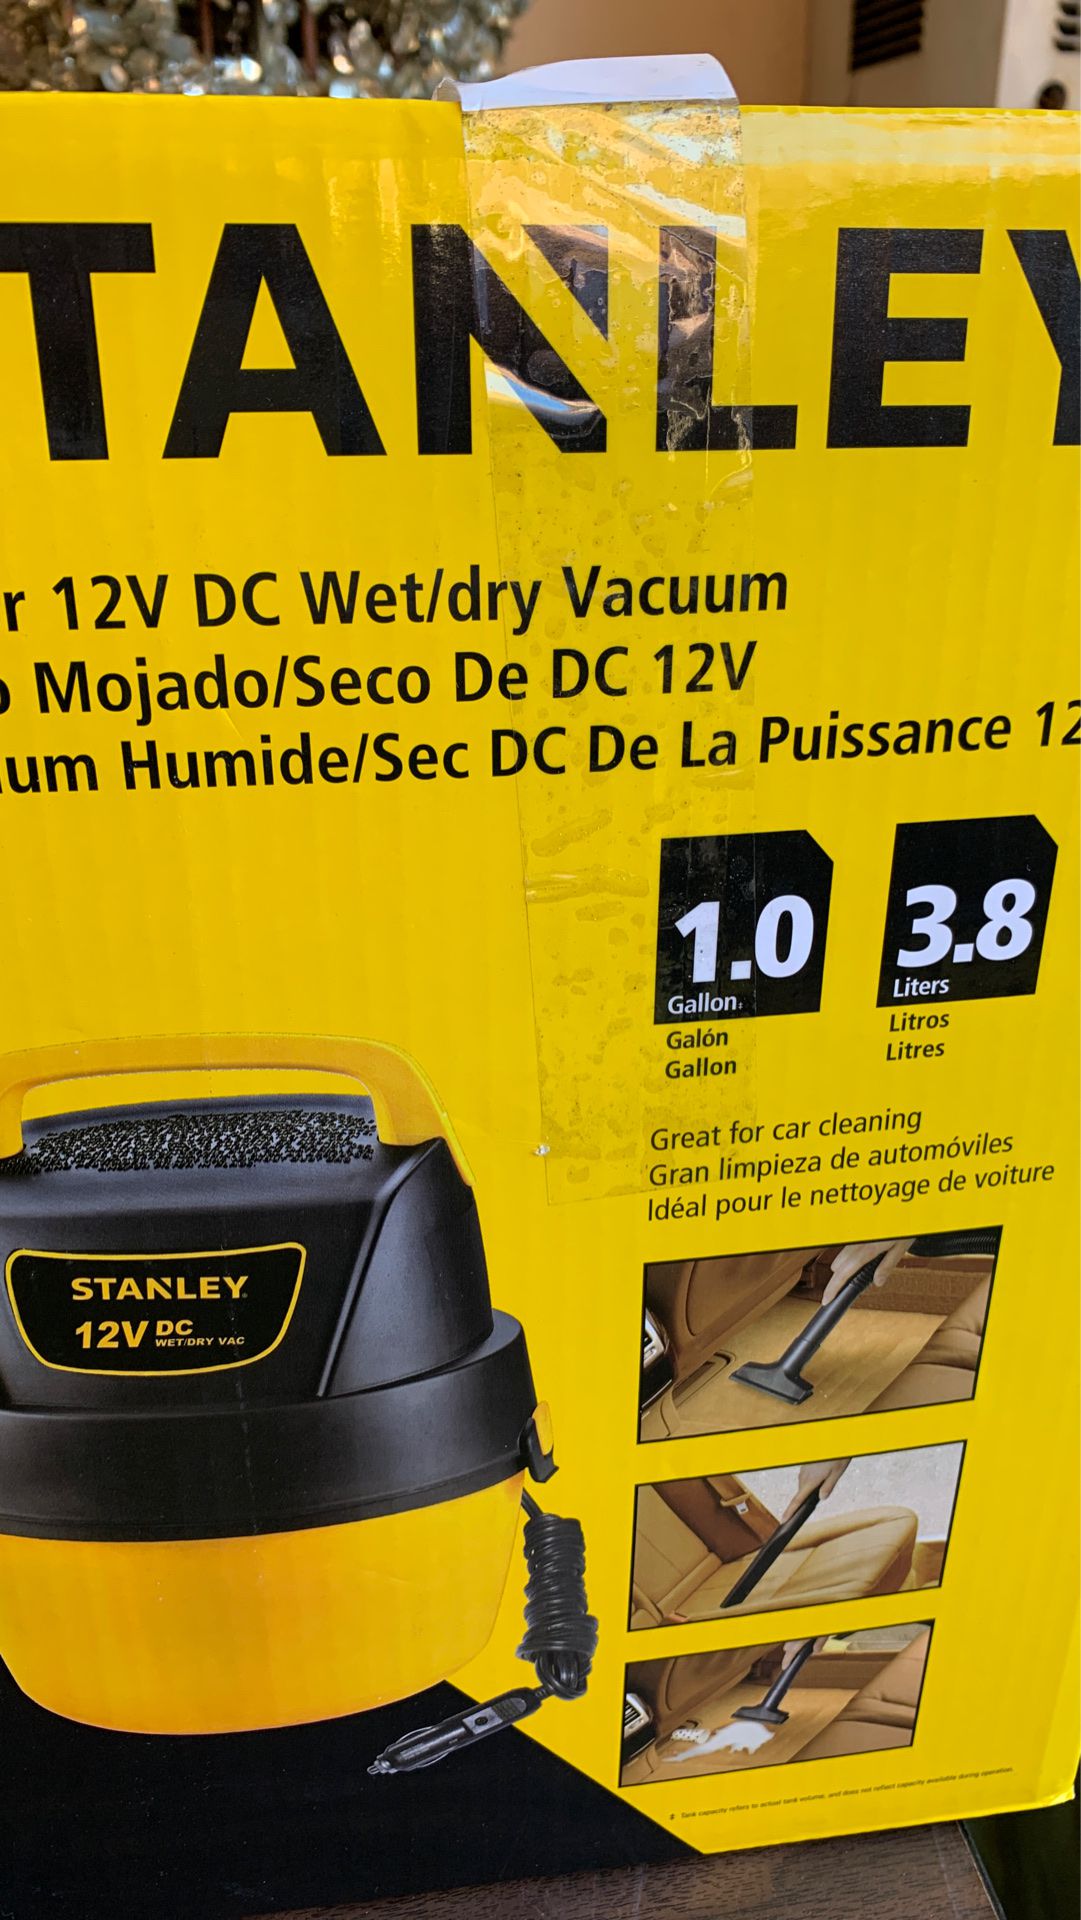 Stanley vacuum brand new